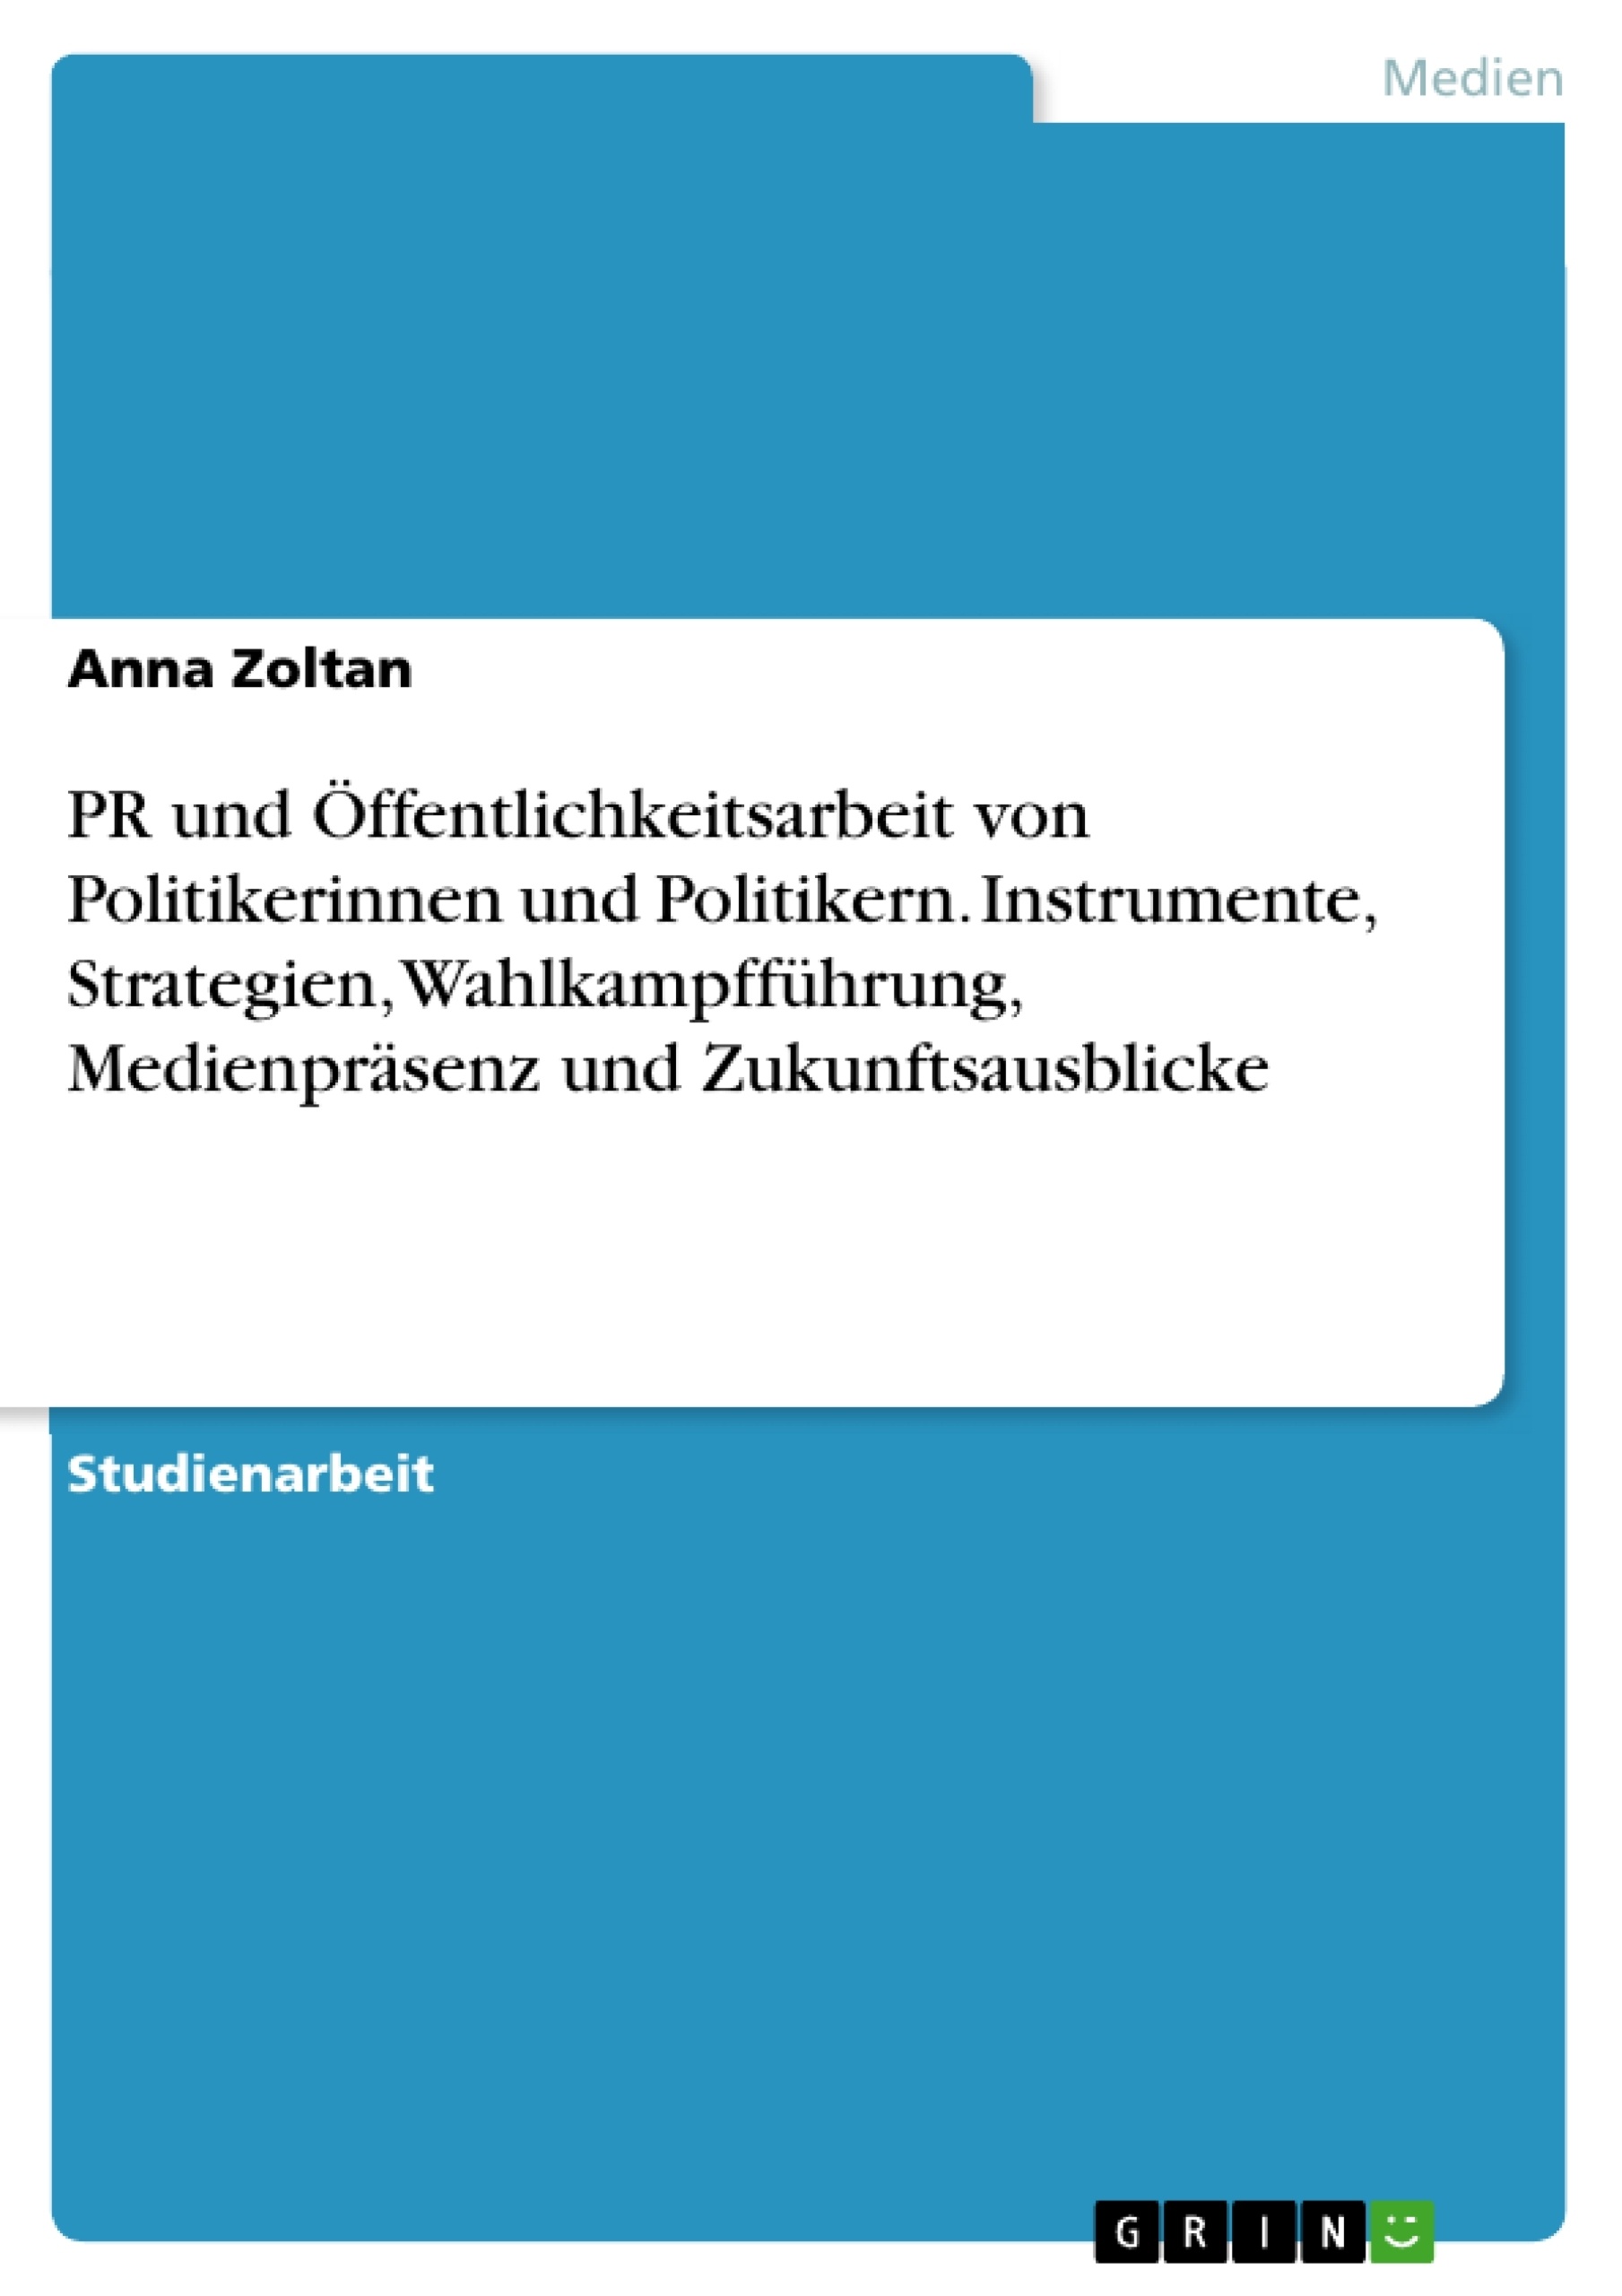 Título: PR und Öffentlichkeitsarbeit von Politikerinnen und Politikern. Instrumente, Strategien, Wahlkampfführung, Medienpräsenz und Zukunftsausblicke